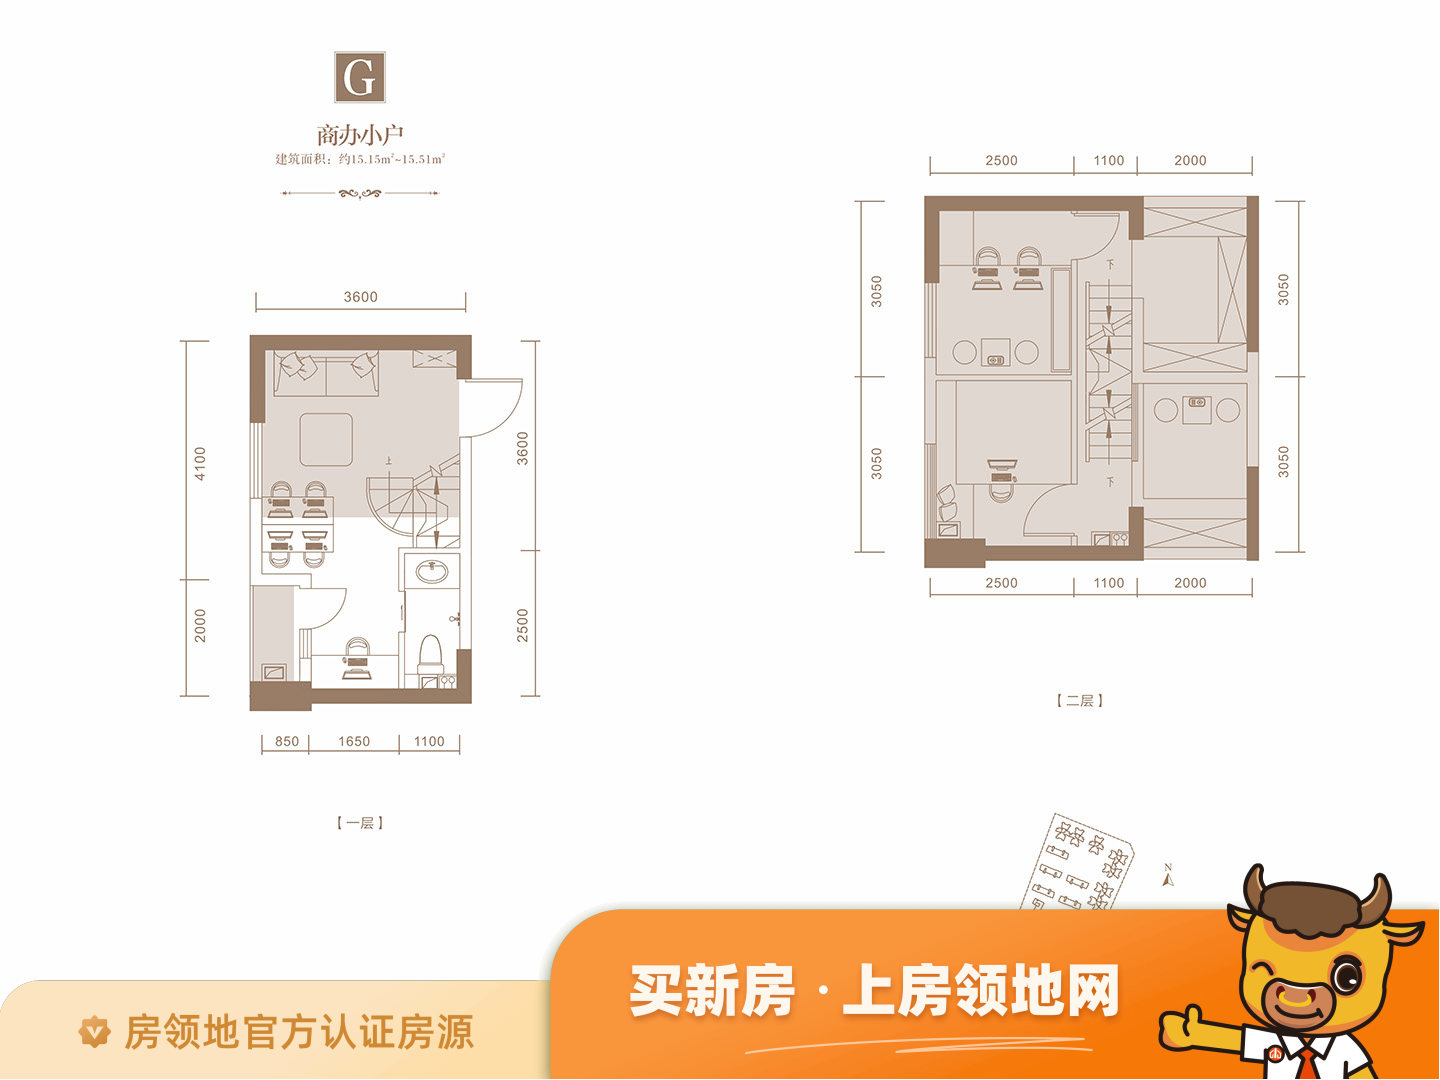 邛海湾长岛(公寓)户型图1室2厅1卫